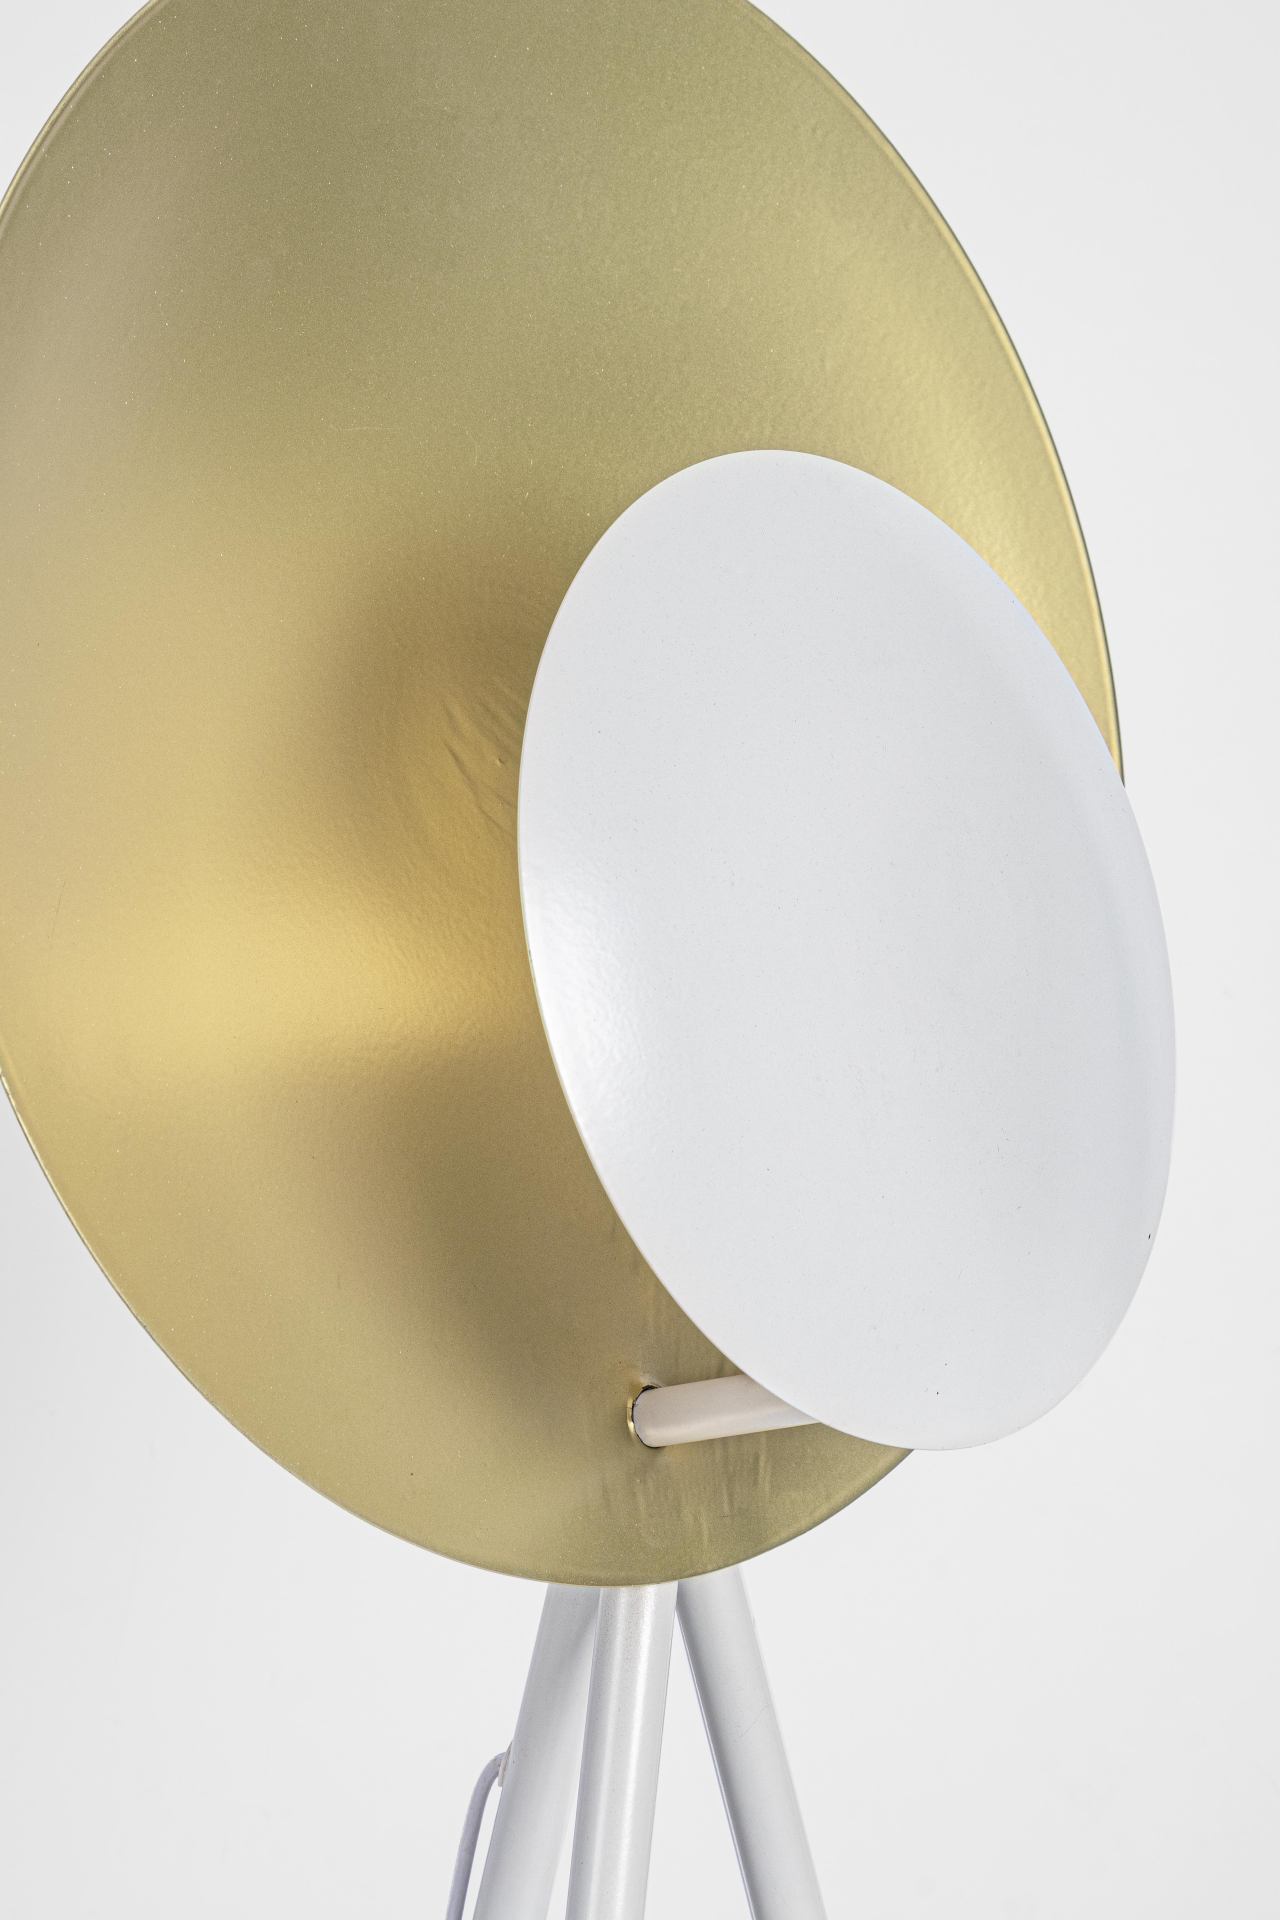 Die Stehleuchte Design überzeugt mit ihrem modernen Design. Gefertigt wurde sie aus Metall, welches einen weißen Farbton besitzt. Der Lampenschirm ist auch aus Metall und hat eine goldene Farbe. Die Lampe besitzt eine Höhe von 155 cm.